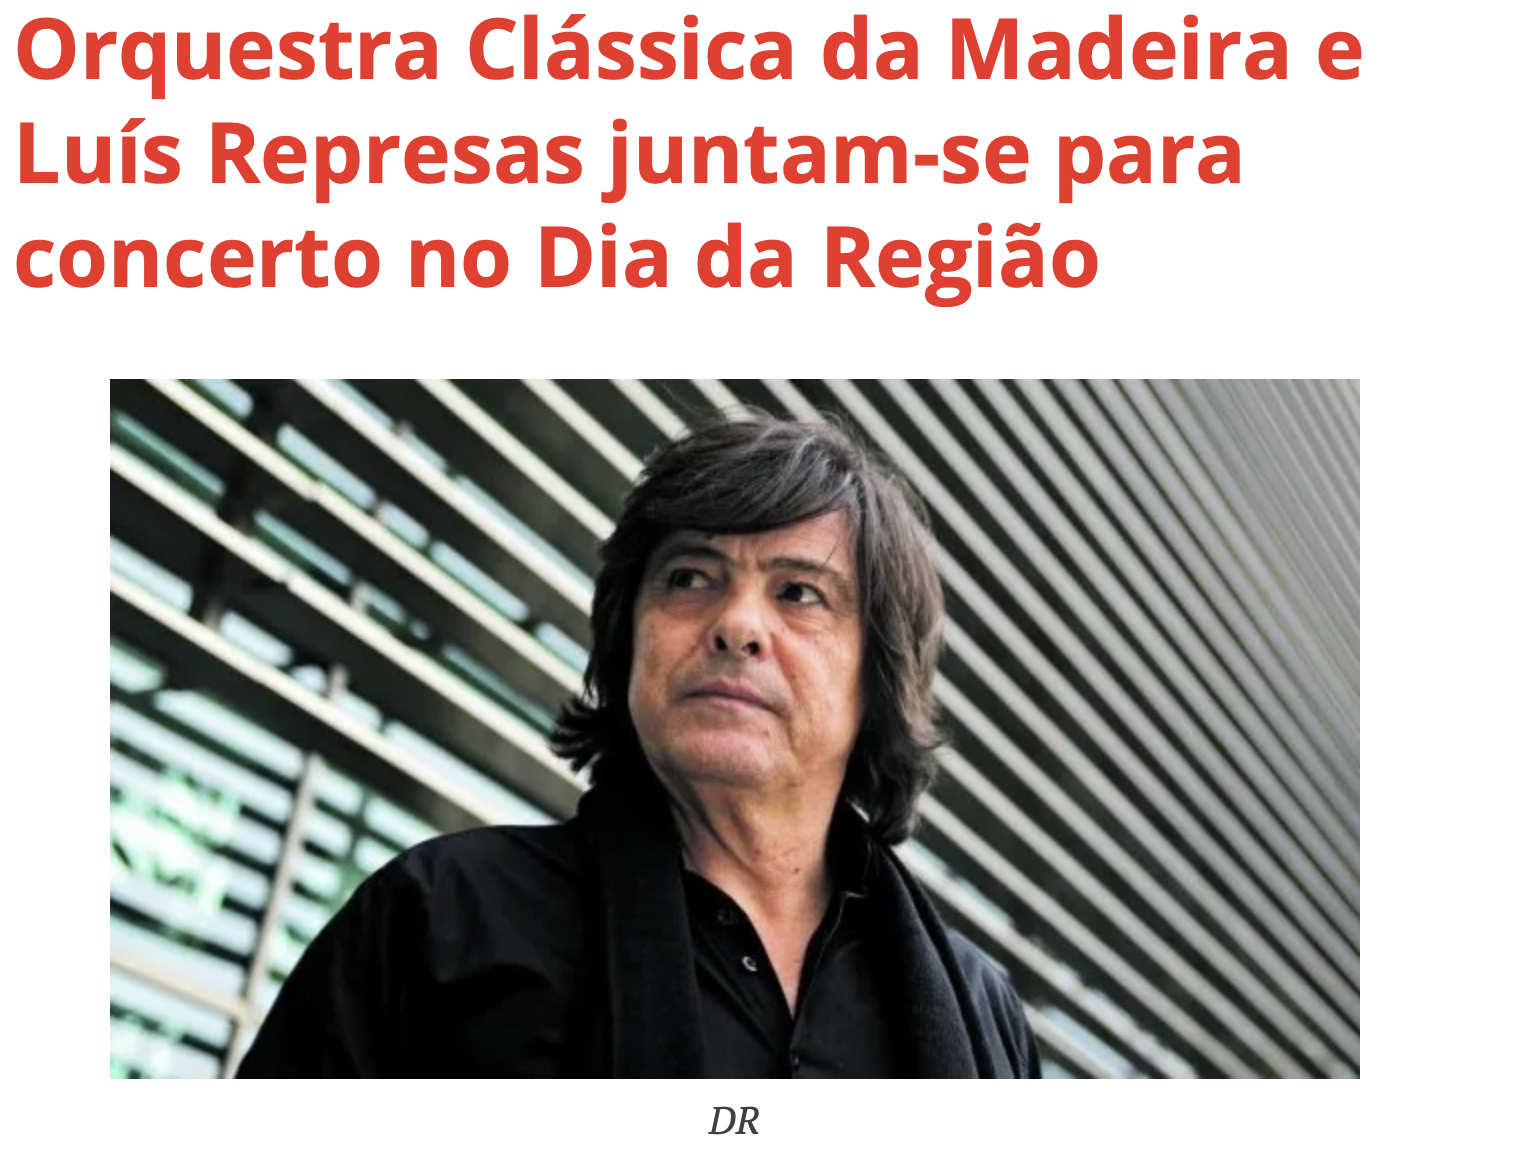 Orquestra Clássica da Madeira e Luís Represas juntam-se para concerto no Dia da Região